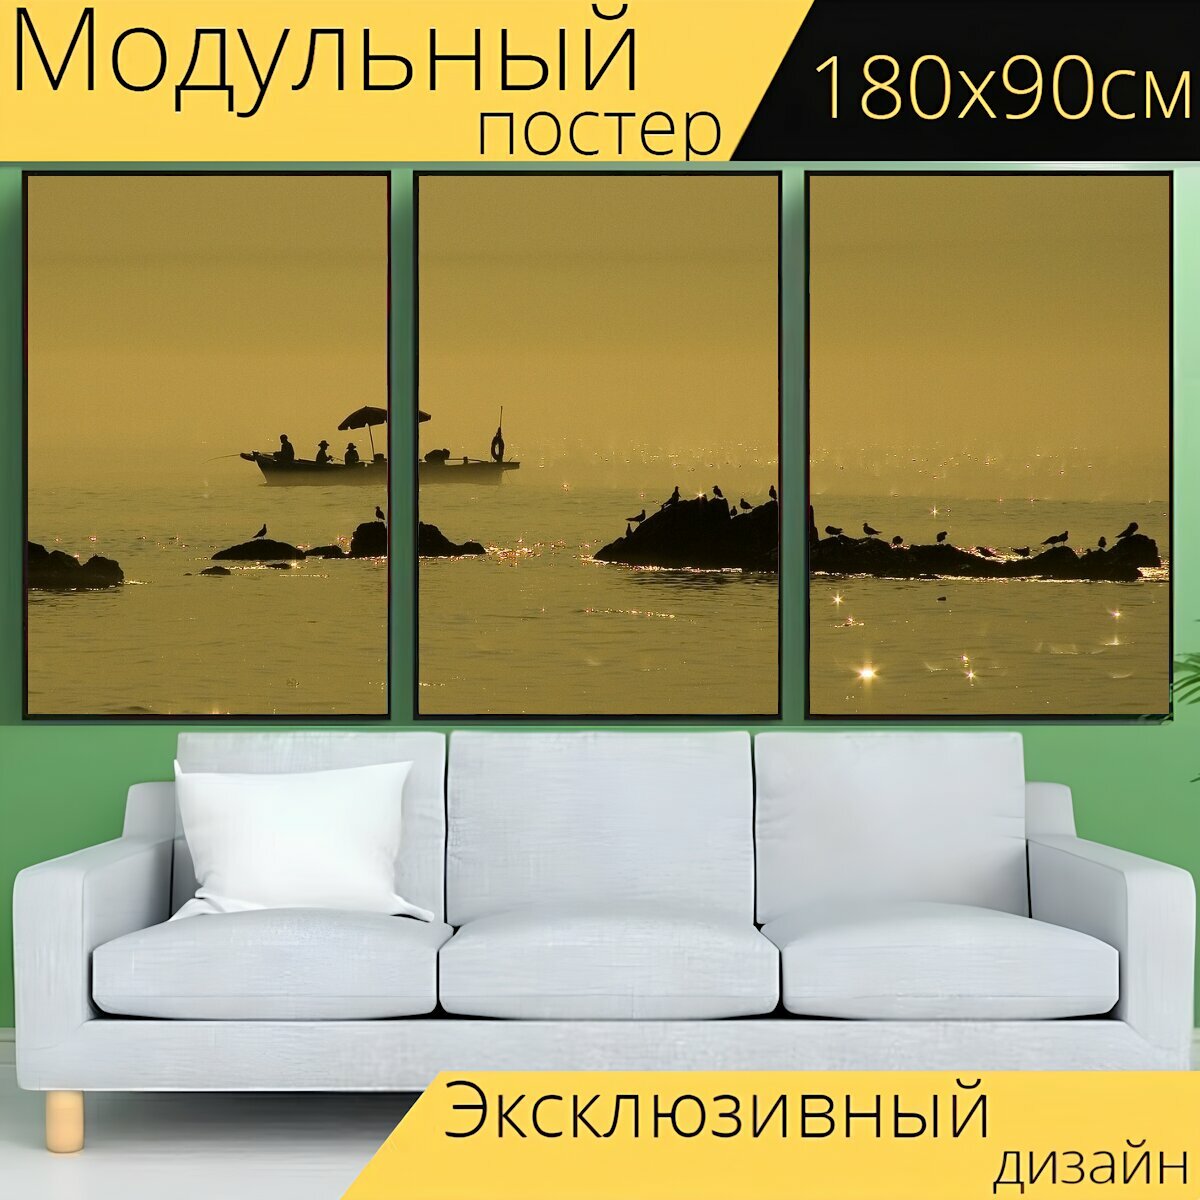 Модульный постер "Морской берег, остров, рыболовная лодка" 180 x 90 см. для интерьера